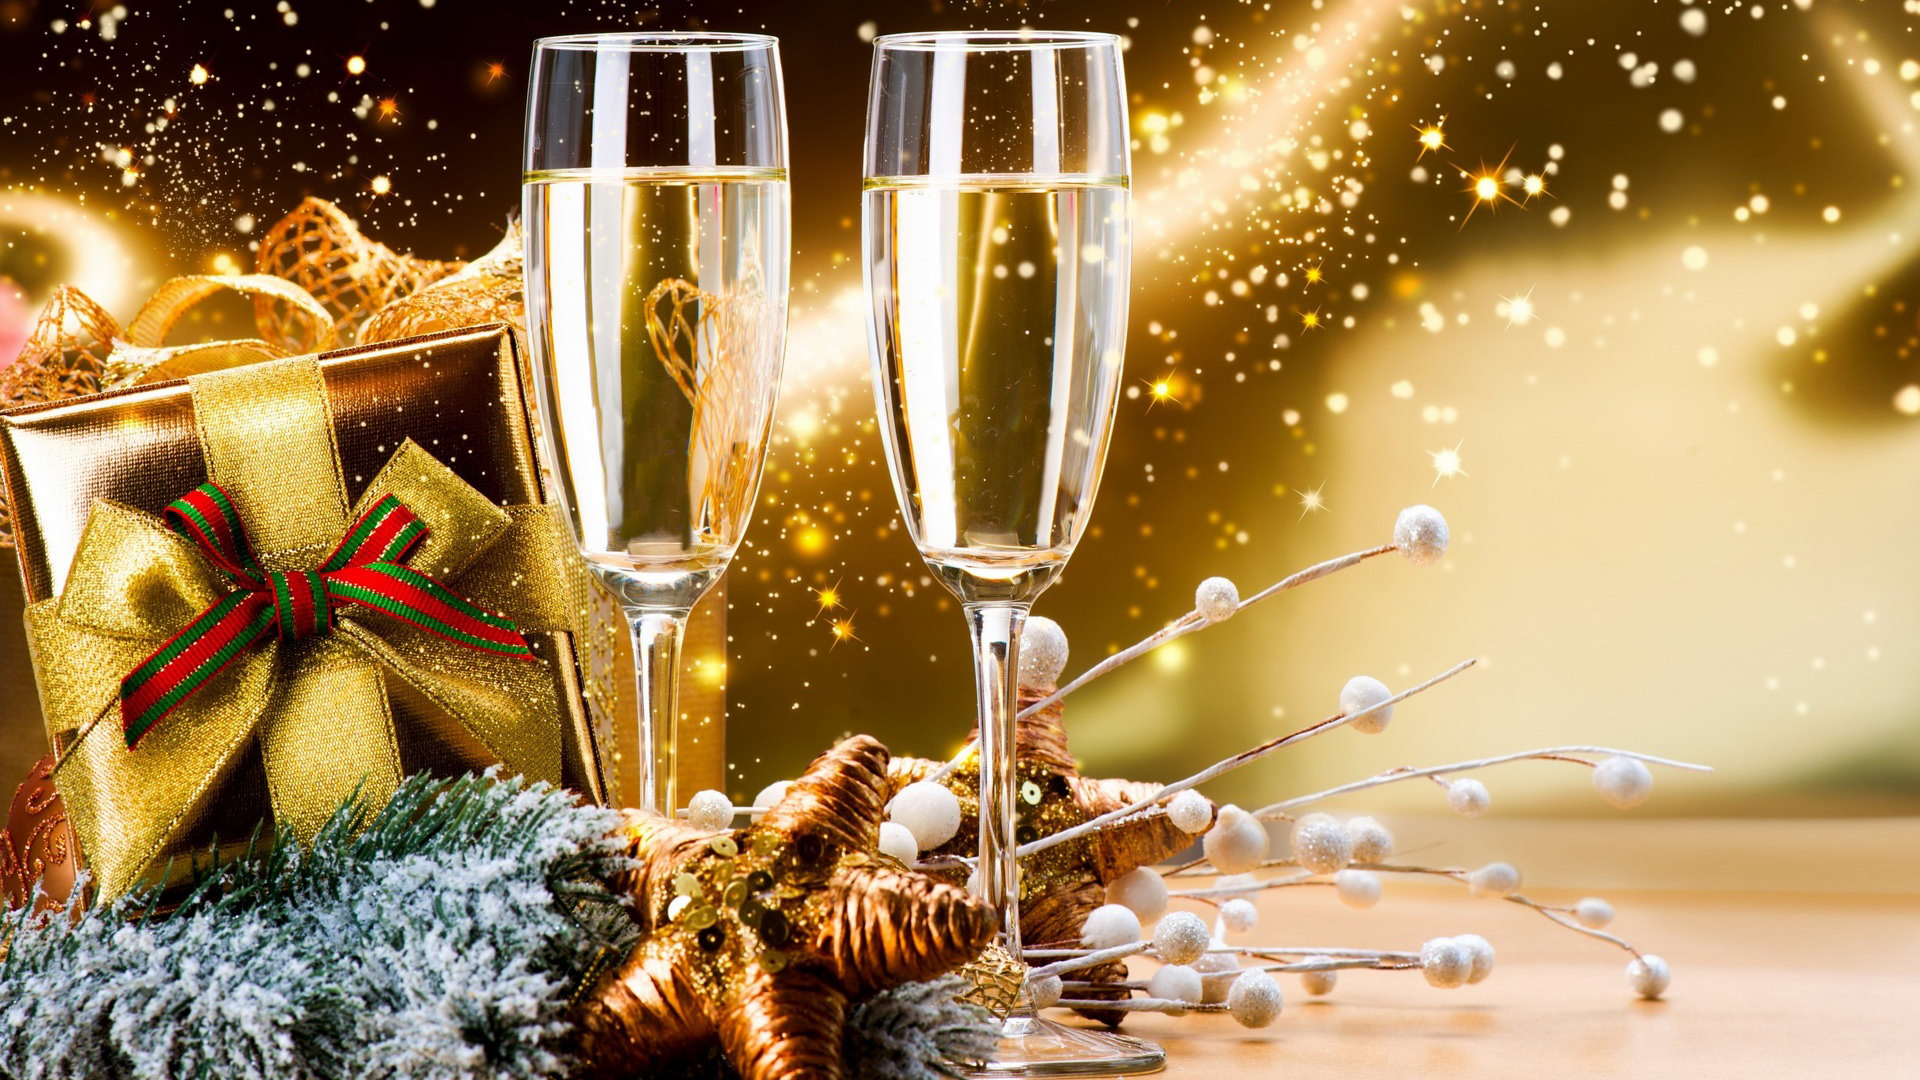 bonne année fond d'écran hd,champagne,boisson,verres à pied champagne,le jour de l'an,boisson alcoolisée